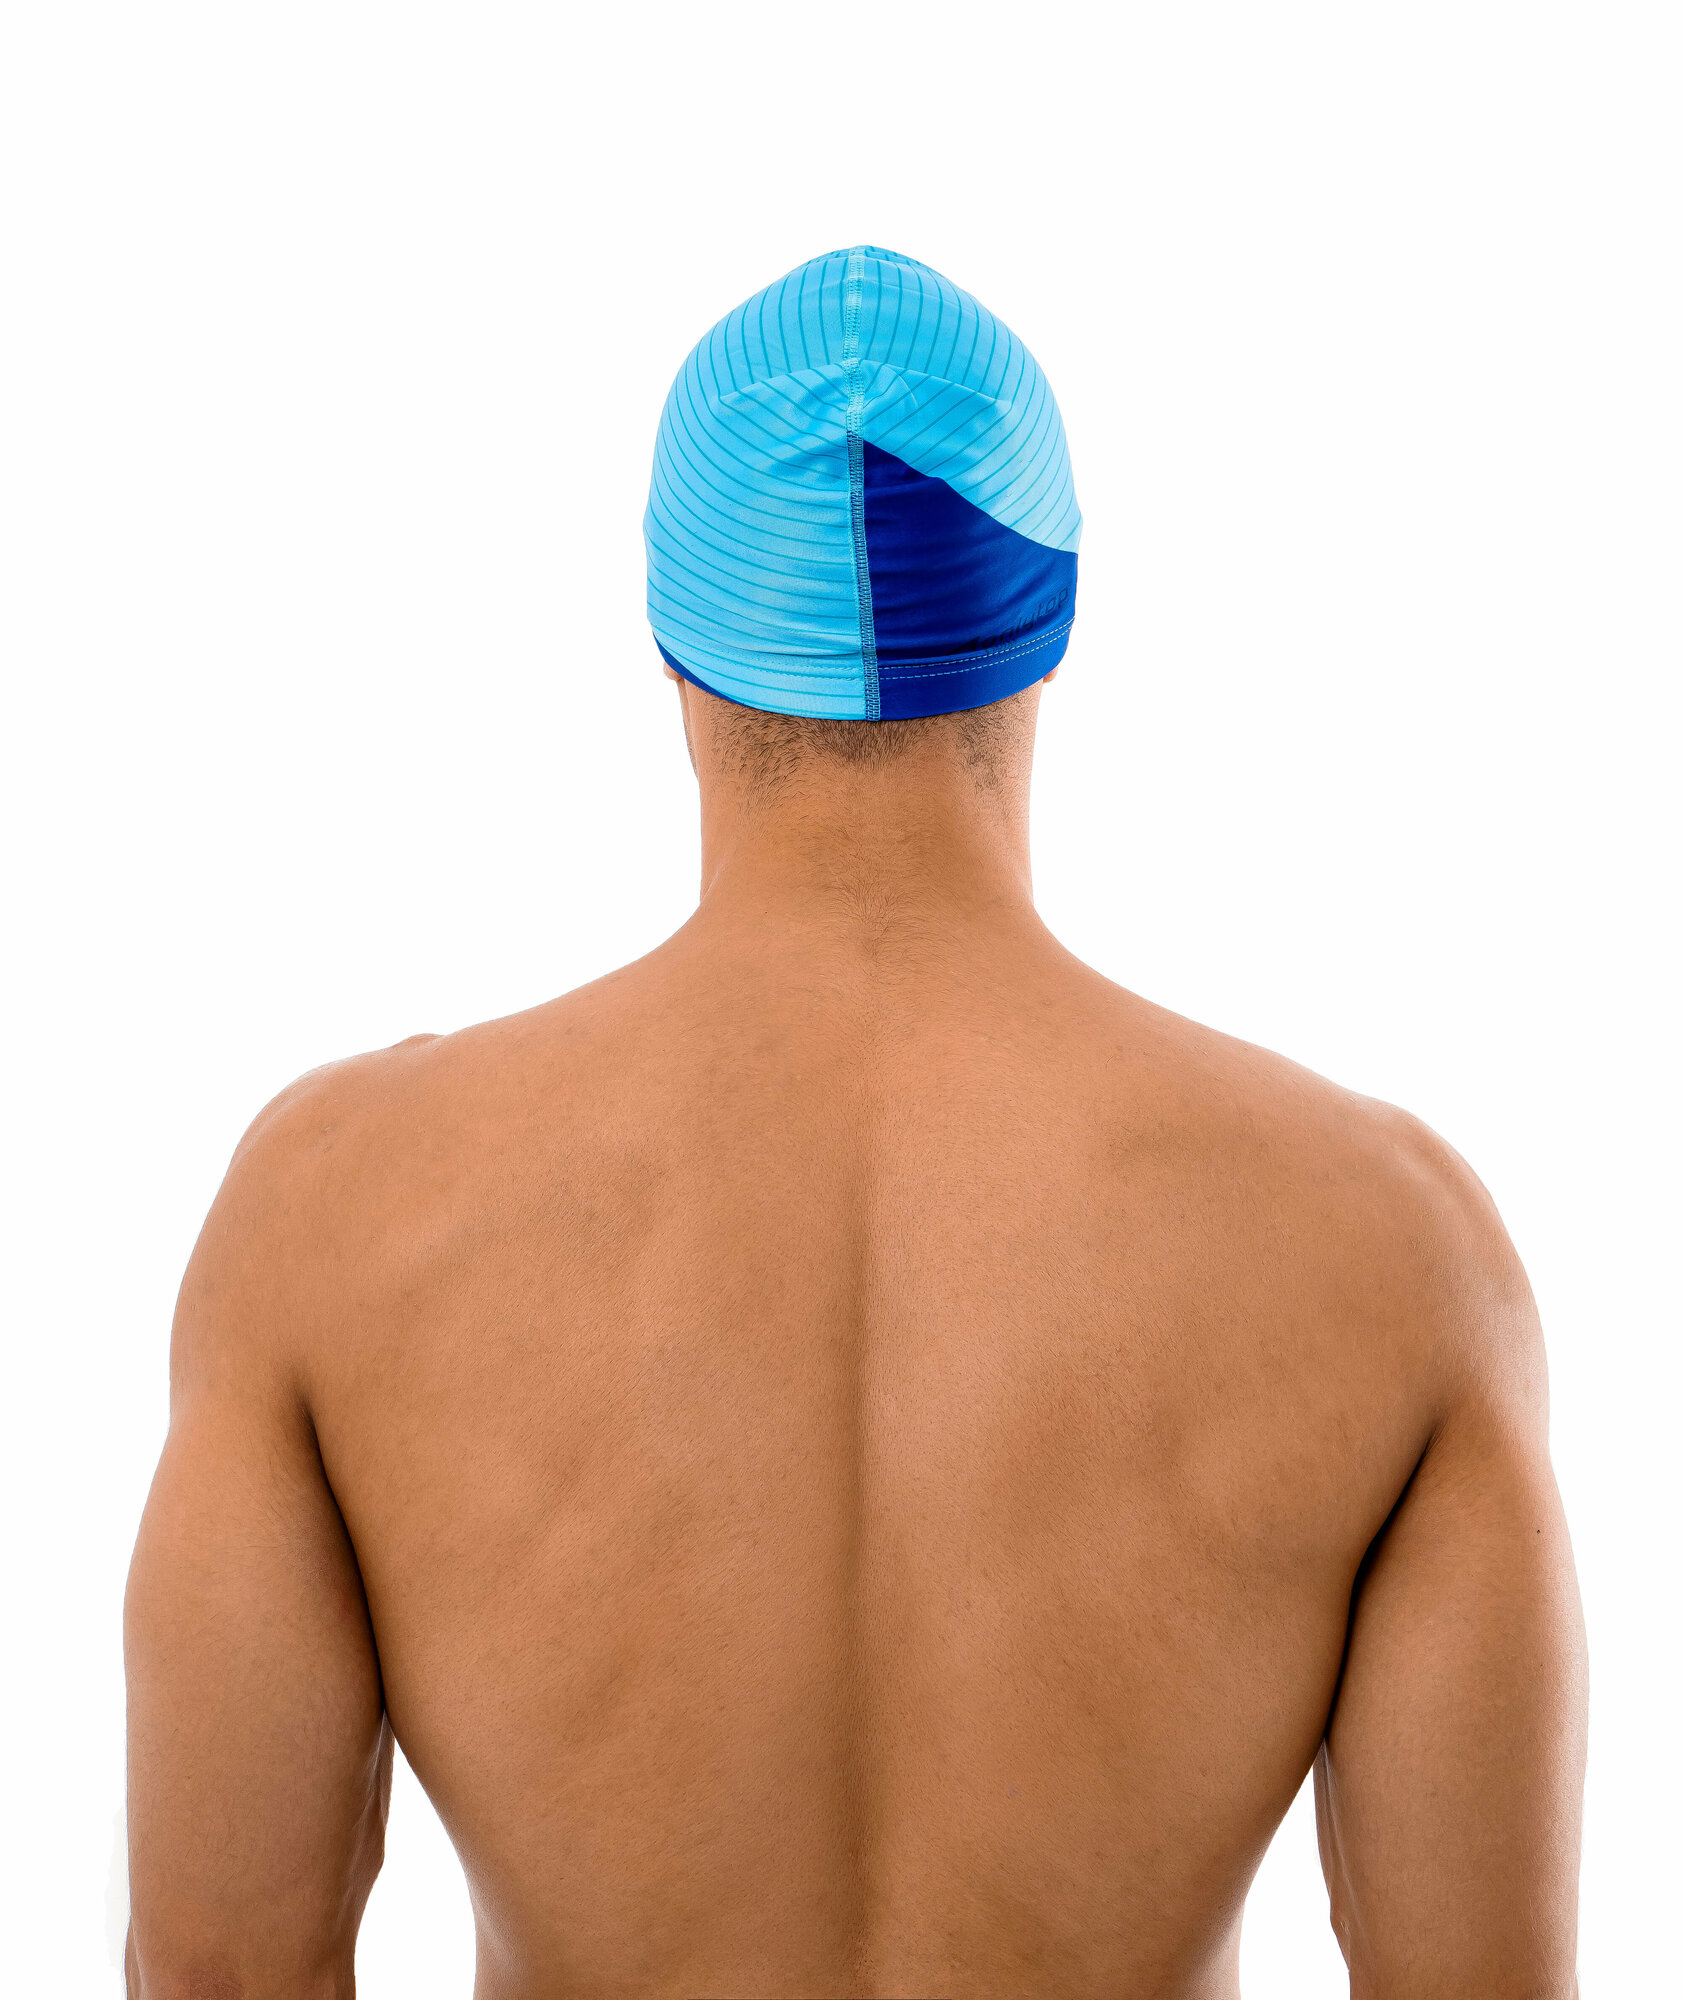 Шапочка ONLYTOP, для плавания, взрослая, тканевая, обхват 54-60 см, цвет голубой, синий